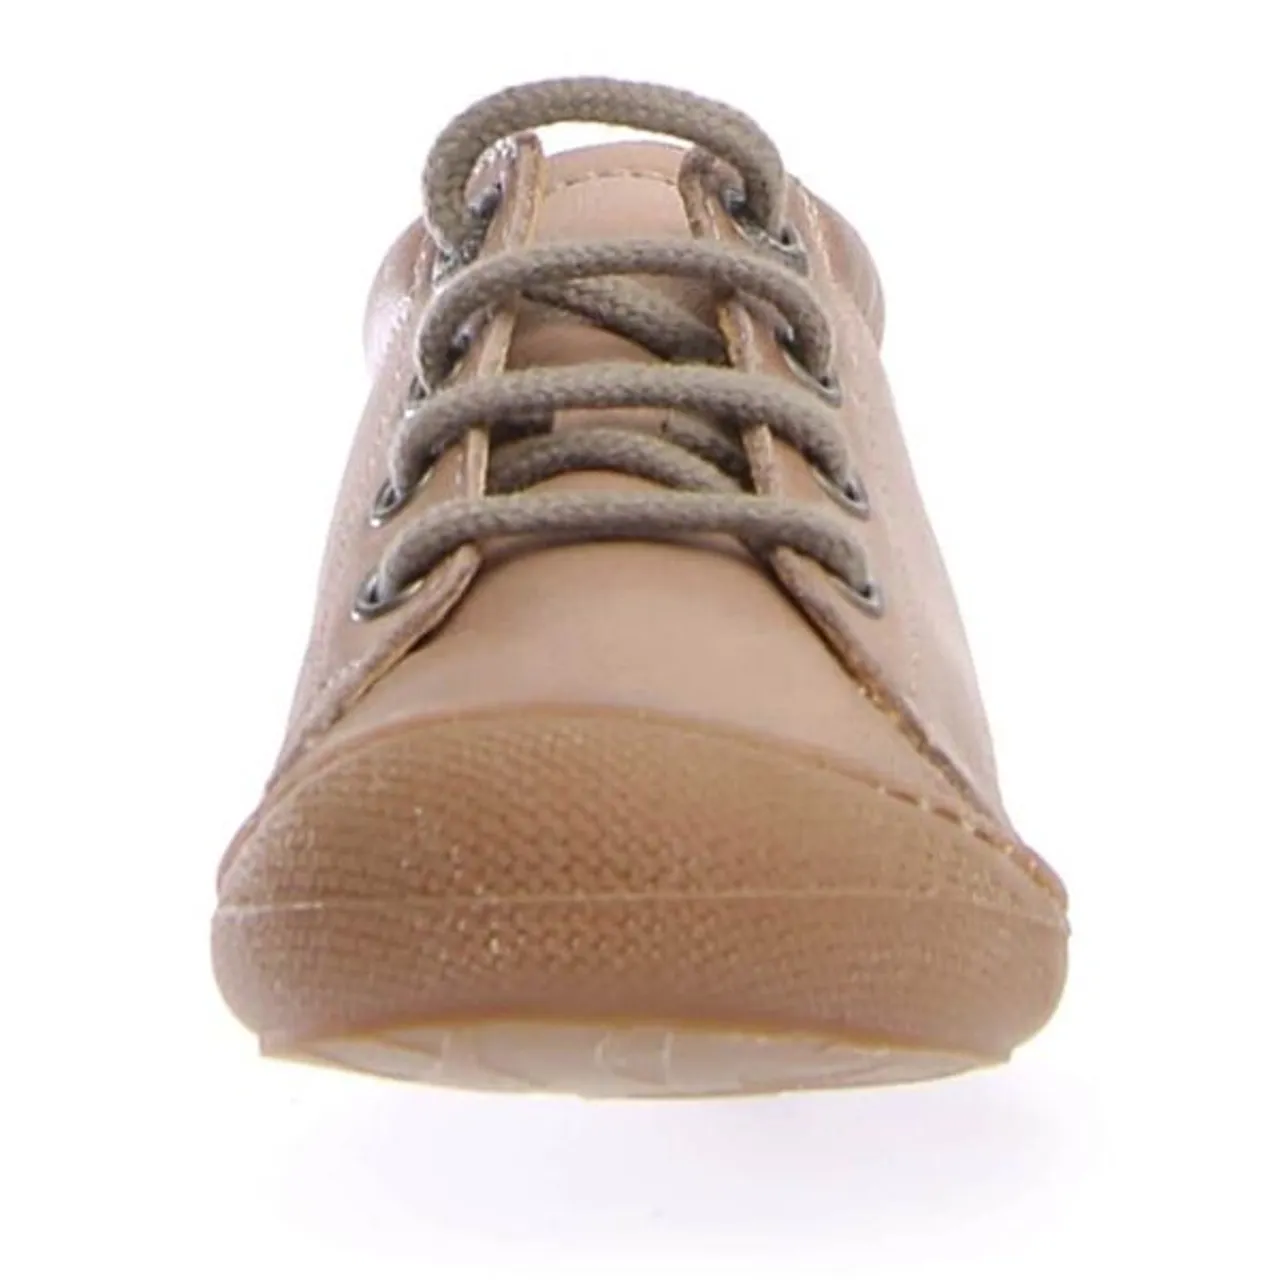 Lauflernschuh NATURINO "Cocoon" Gr. 19, beige (taupe) Kinder Schuhe